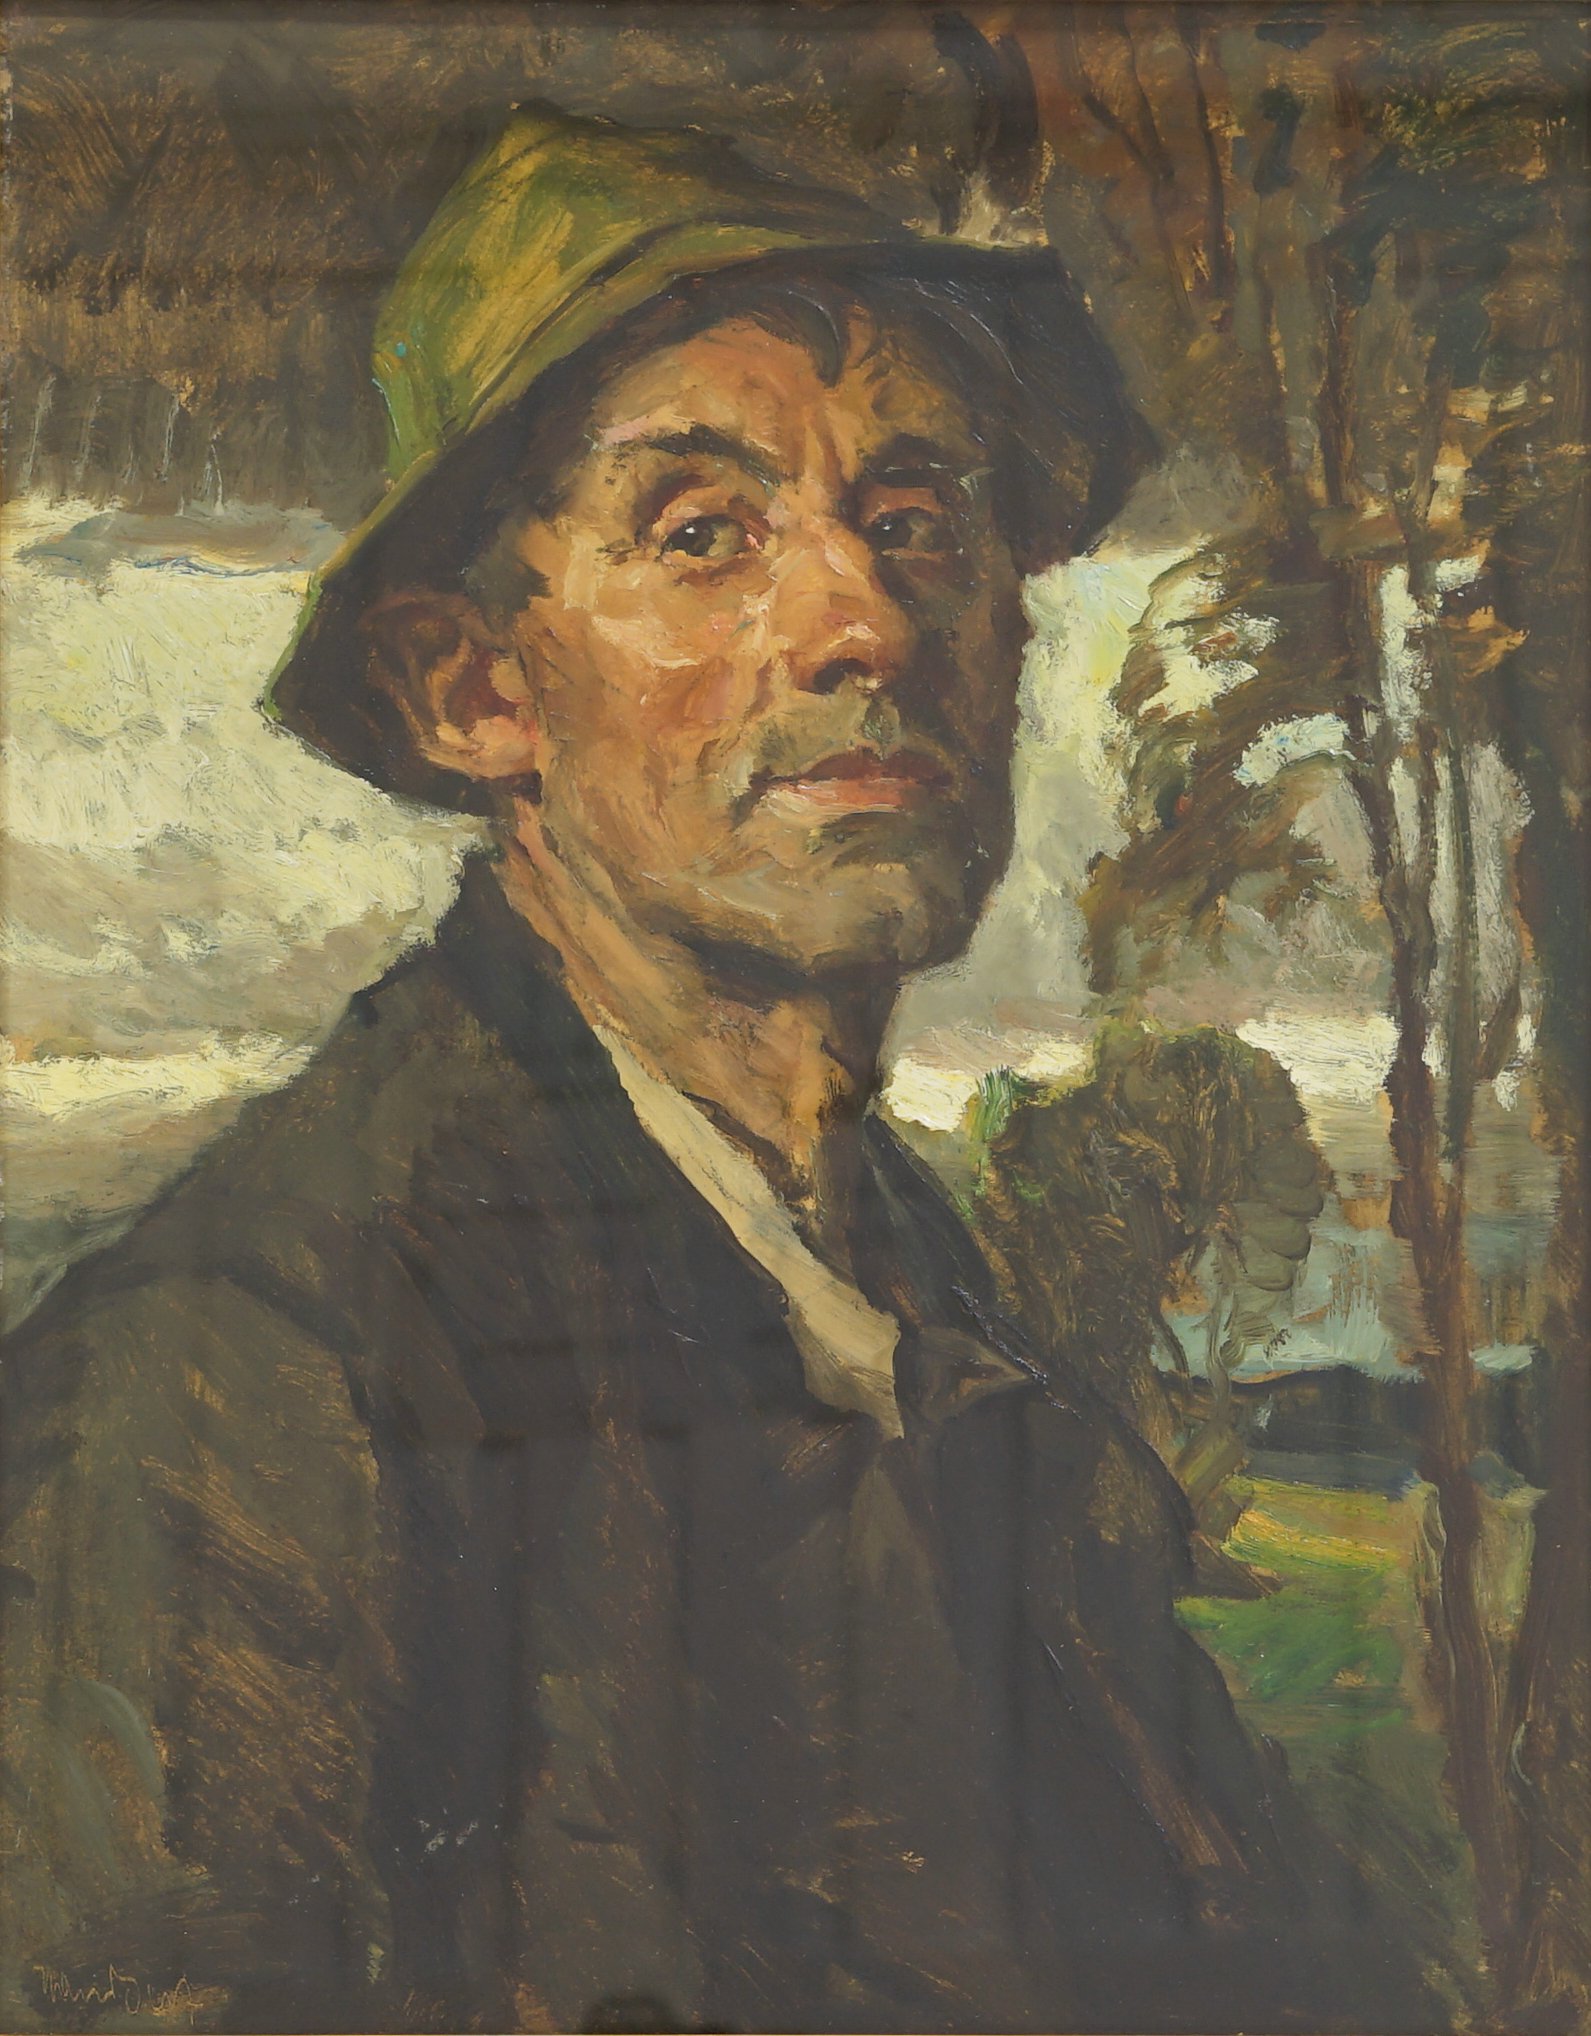 Best, Hans " Brustbild eines Bauern in wolkiger Landschaft" ((C) Kunstmuseum Solingen CC BY-NC)